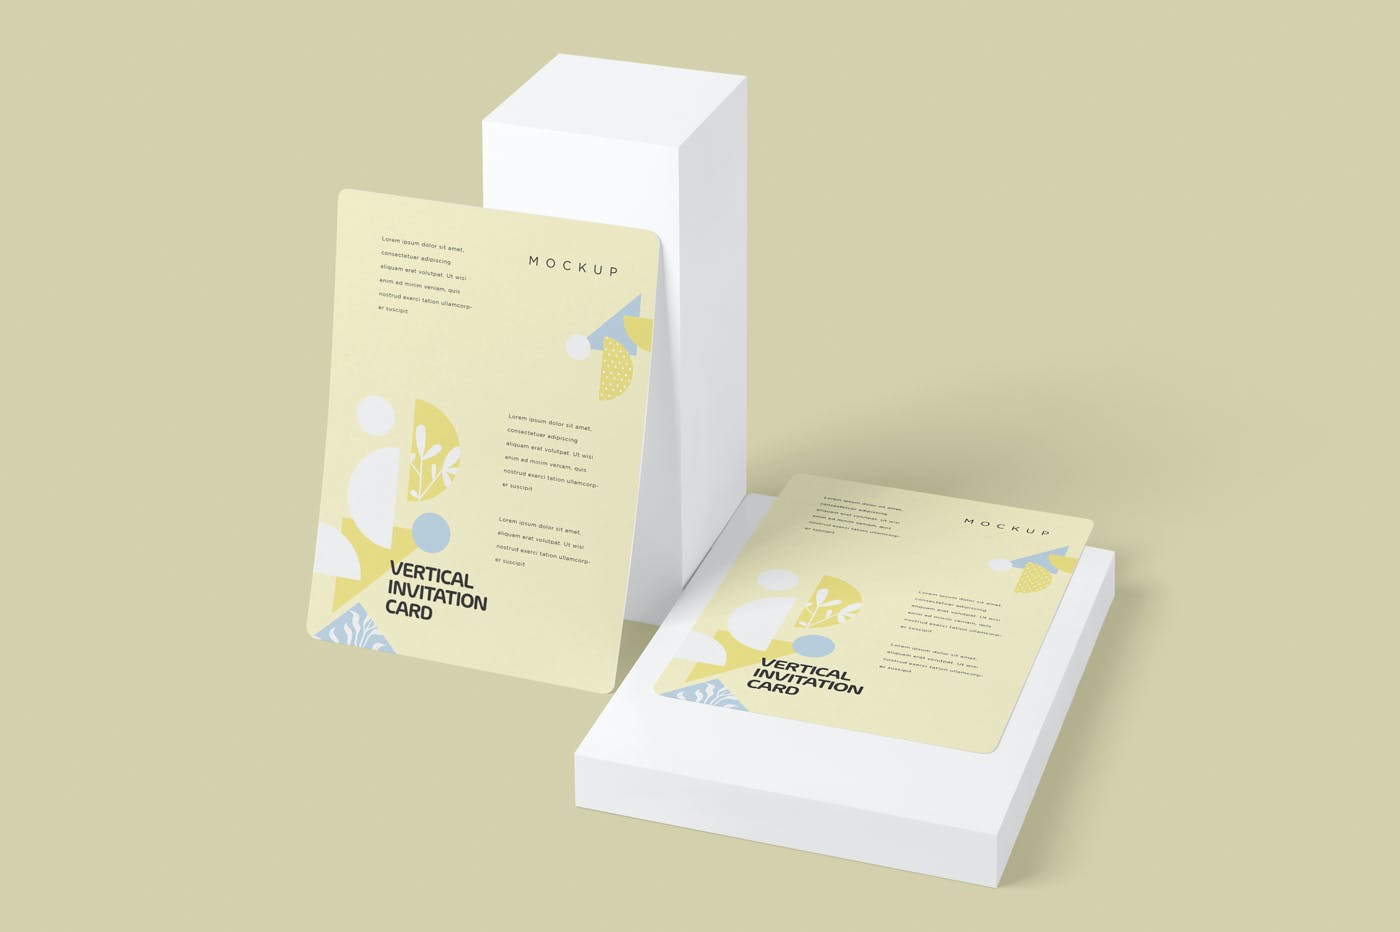 邀请函&邀请卡单页样机 Beautiful 5×7 Vertical Invitation Card Mockups设计素材模板